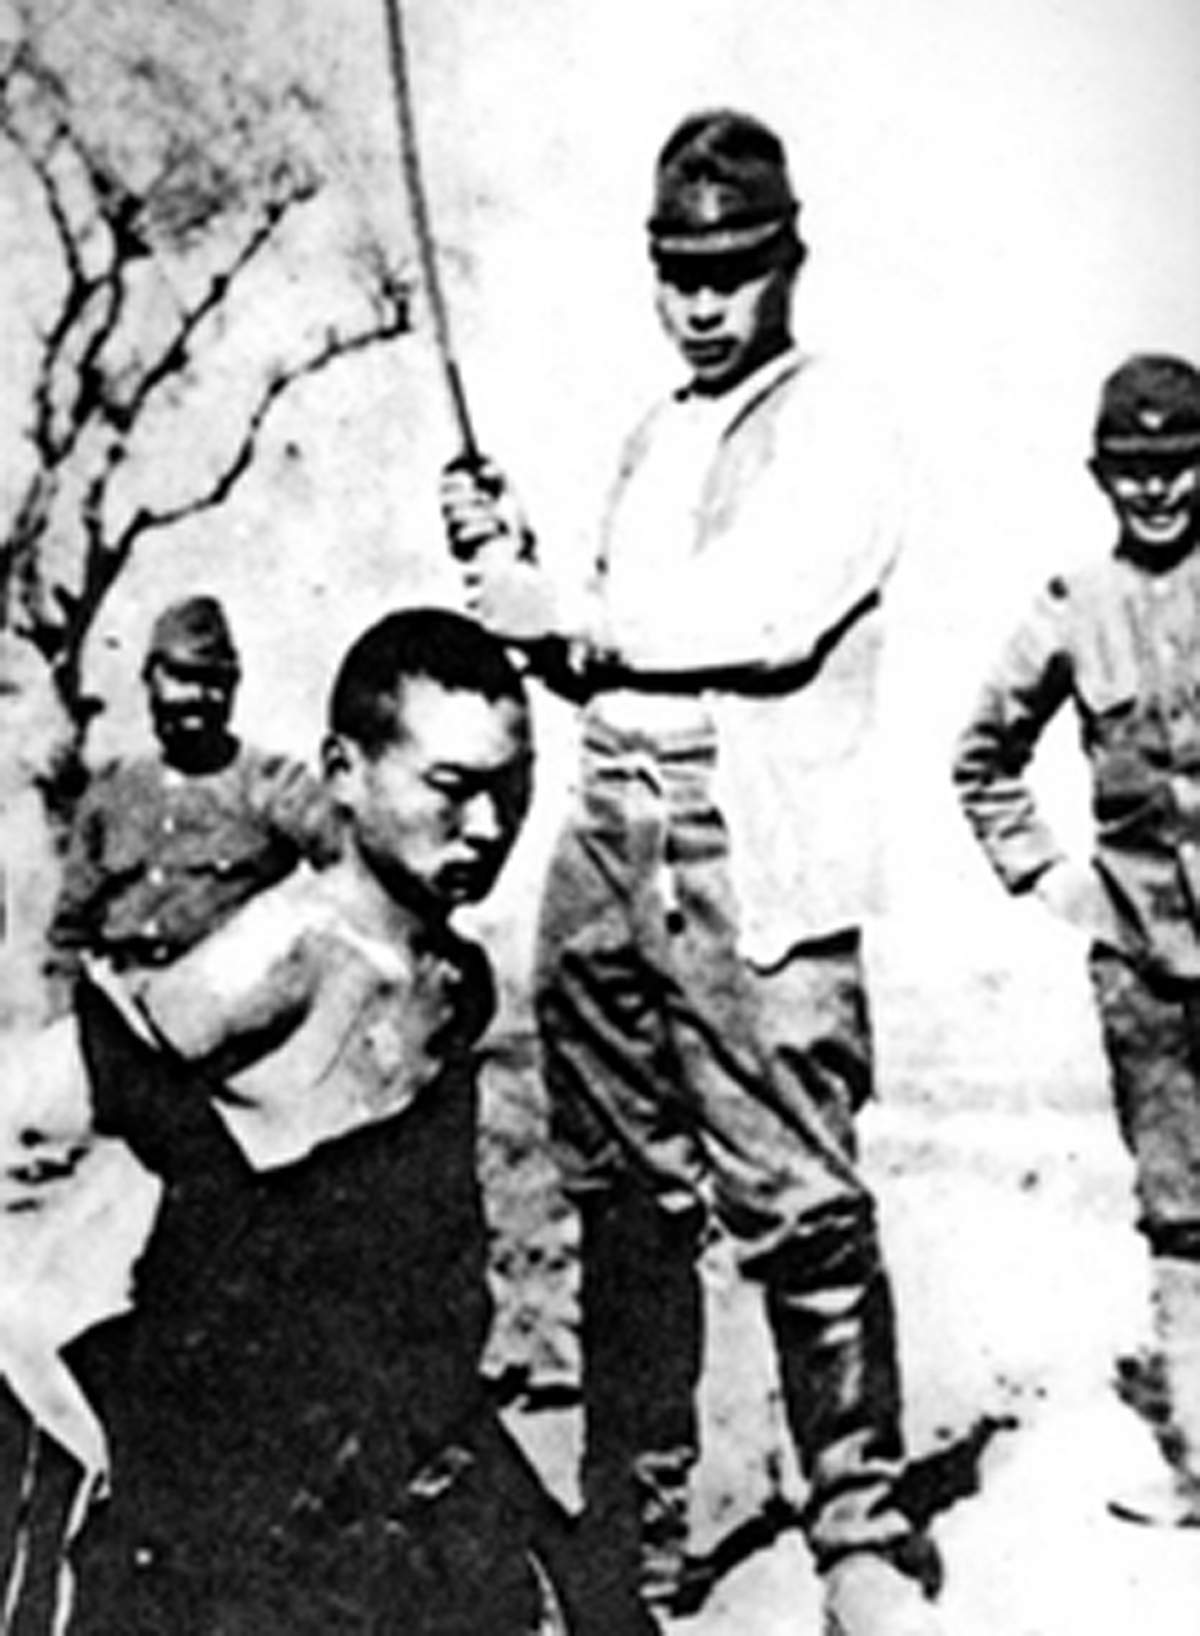 日军在南京进行大屠杀， 30万中国军民惨死于日军屠刀之下。这些从被俘日军身上缴获的杀人照片，充分证明了日军以杀人取乐的残暴行径。-军事史-图片